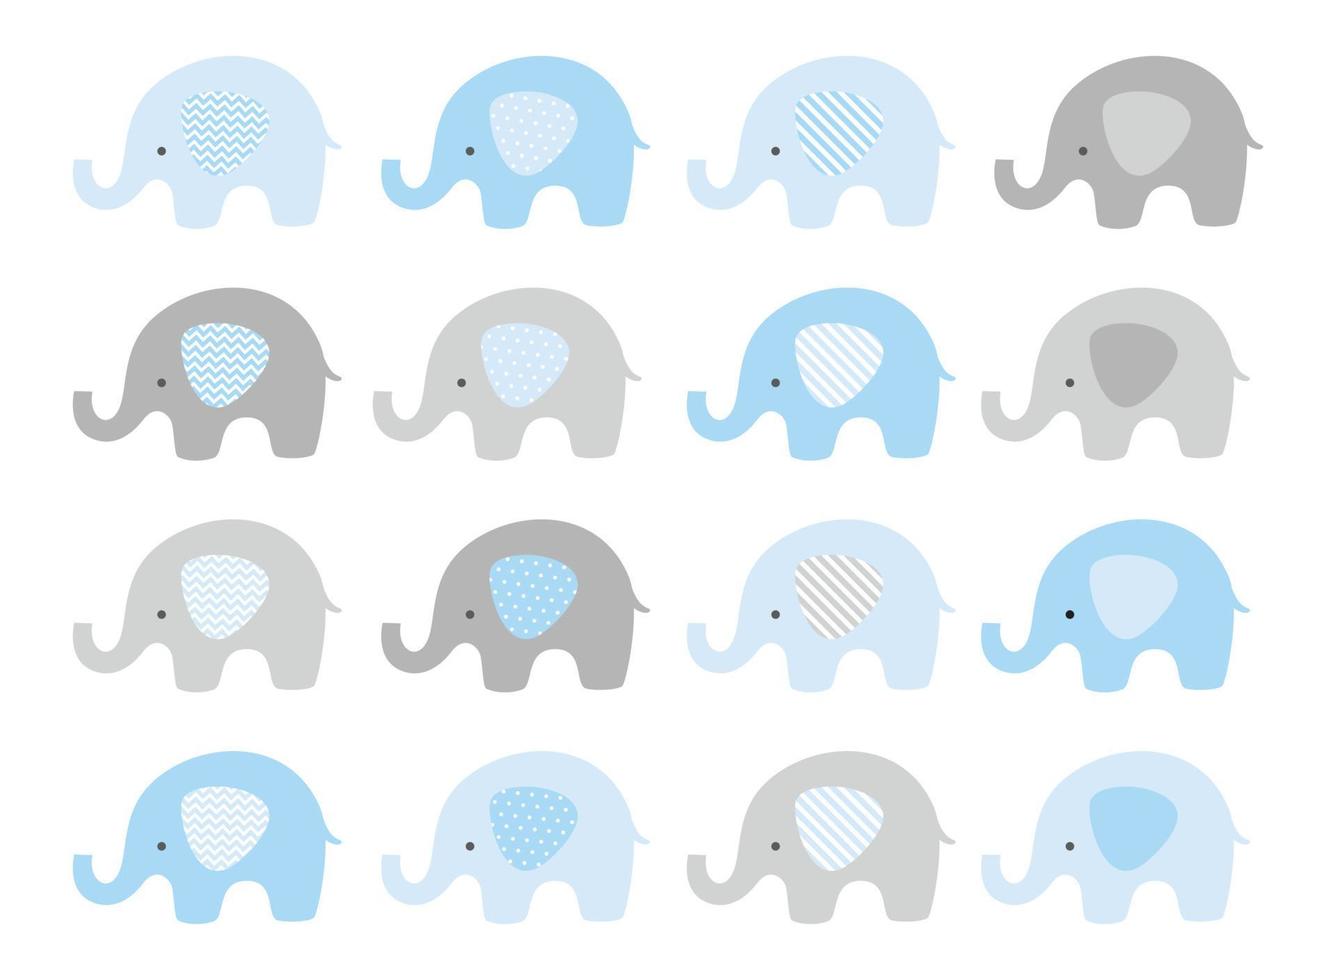 simpatico set vettoriale di elefanti. elefanti di vettore con le orecchie modellate. blu e grigio.